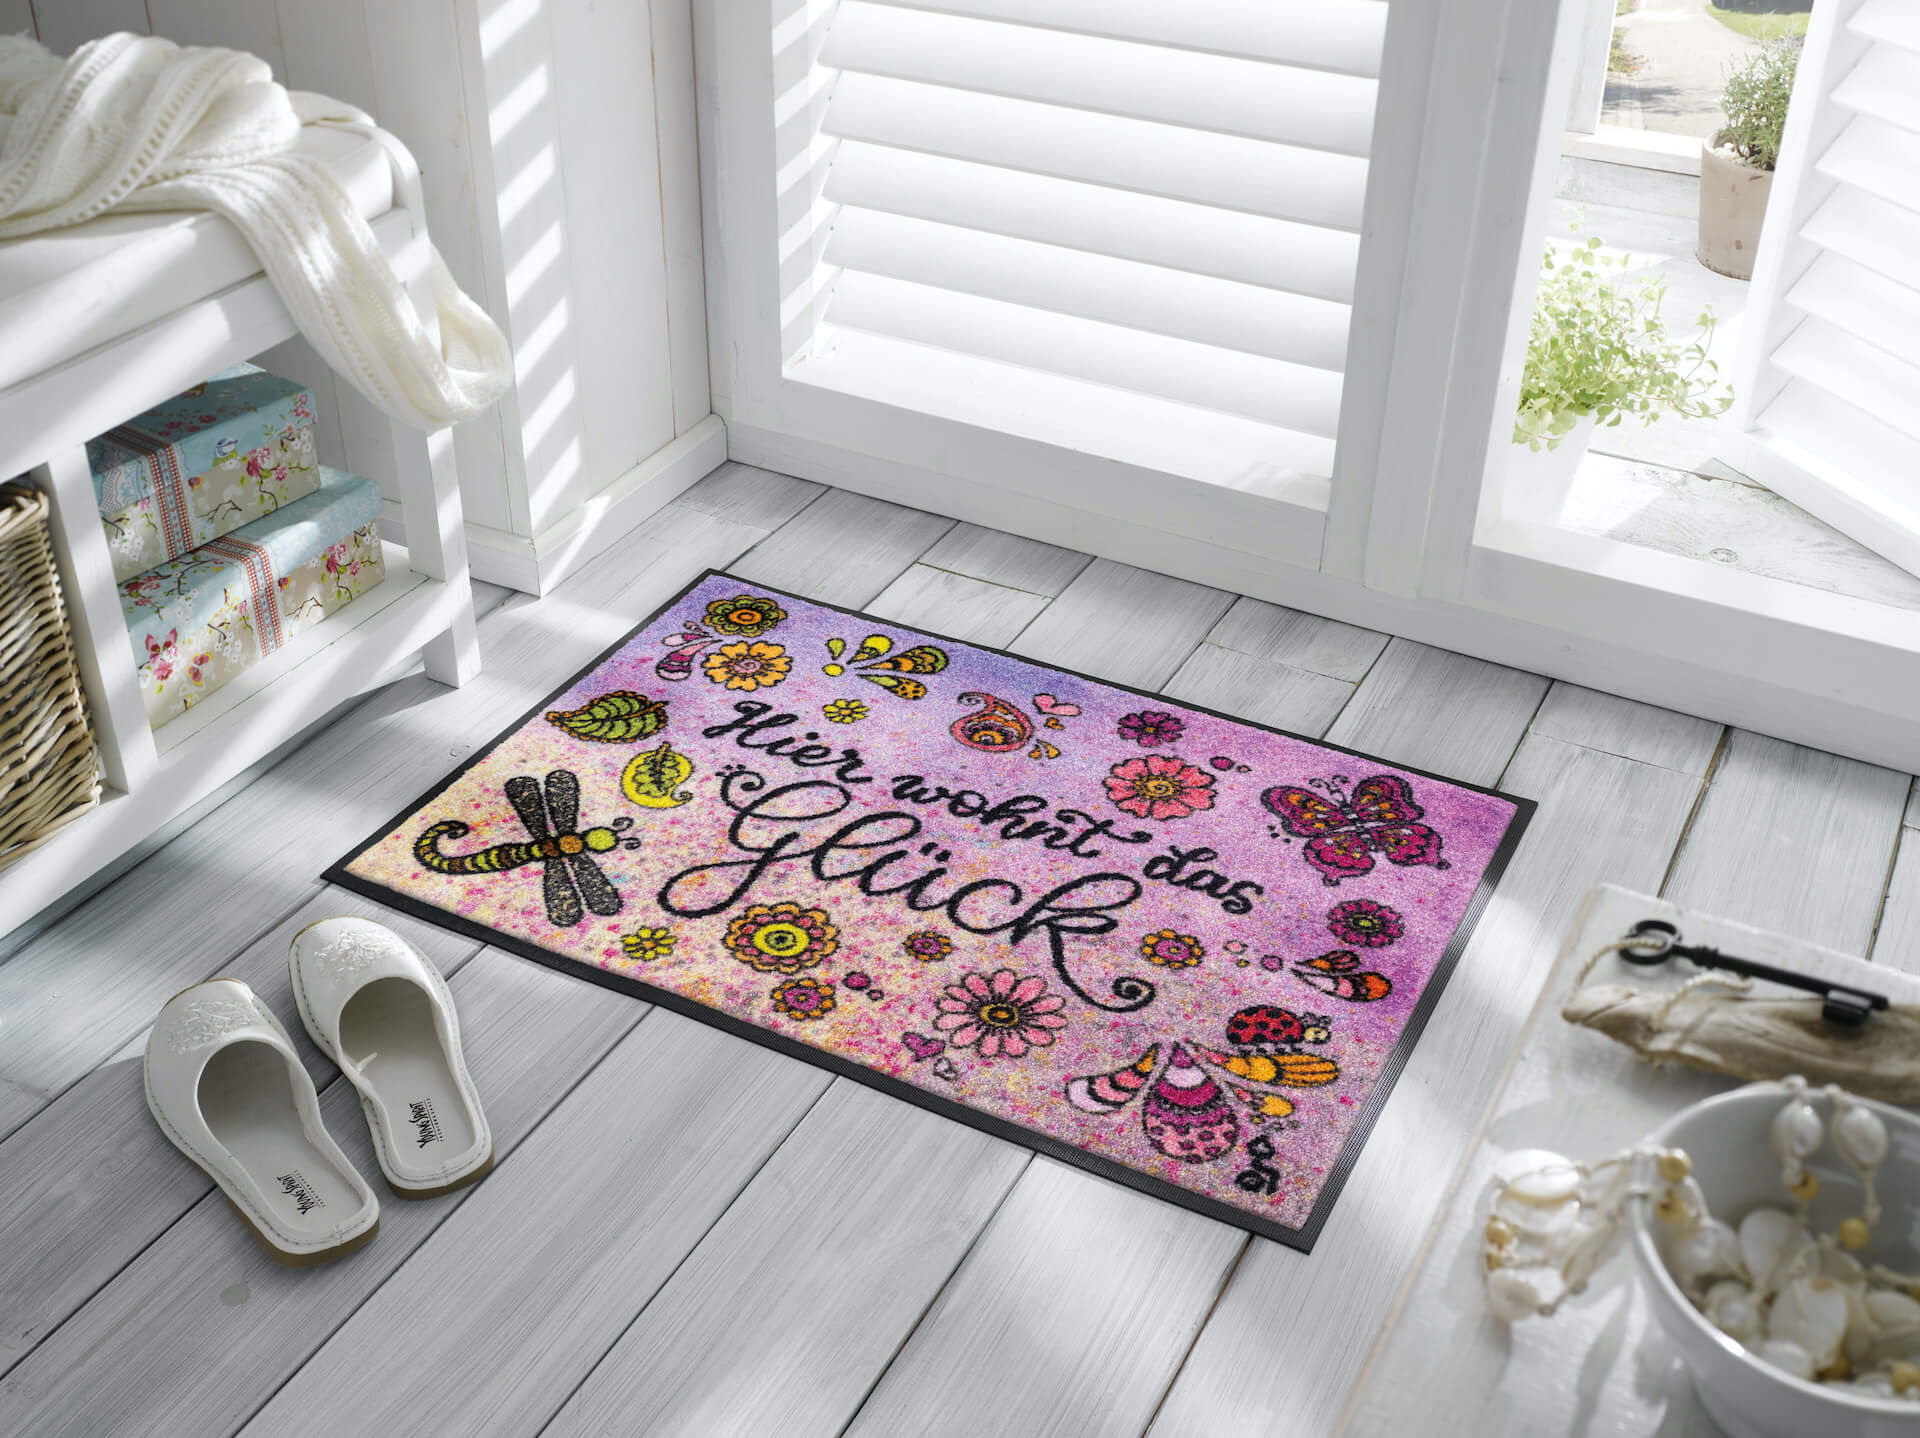 Fußmatte "Hier wohnt das Glück", Rollin' Art Design, wash & dry Kollektion, 50 x 75 cm, Milieubild